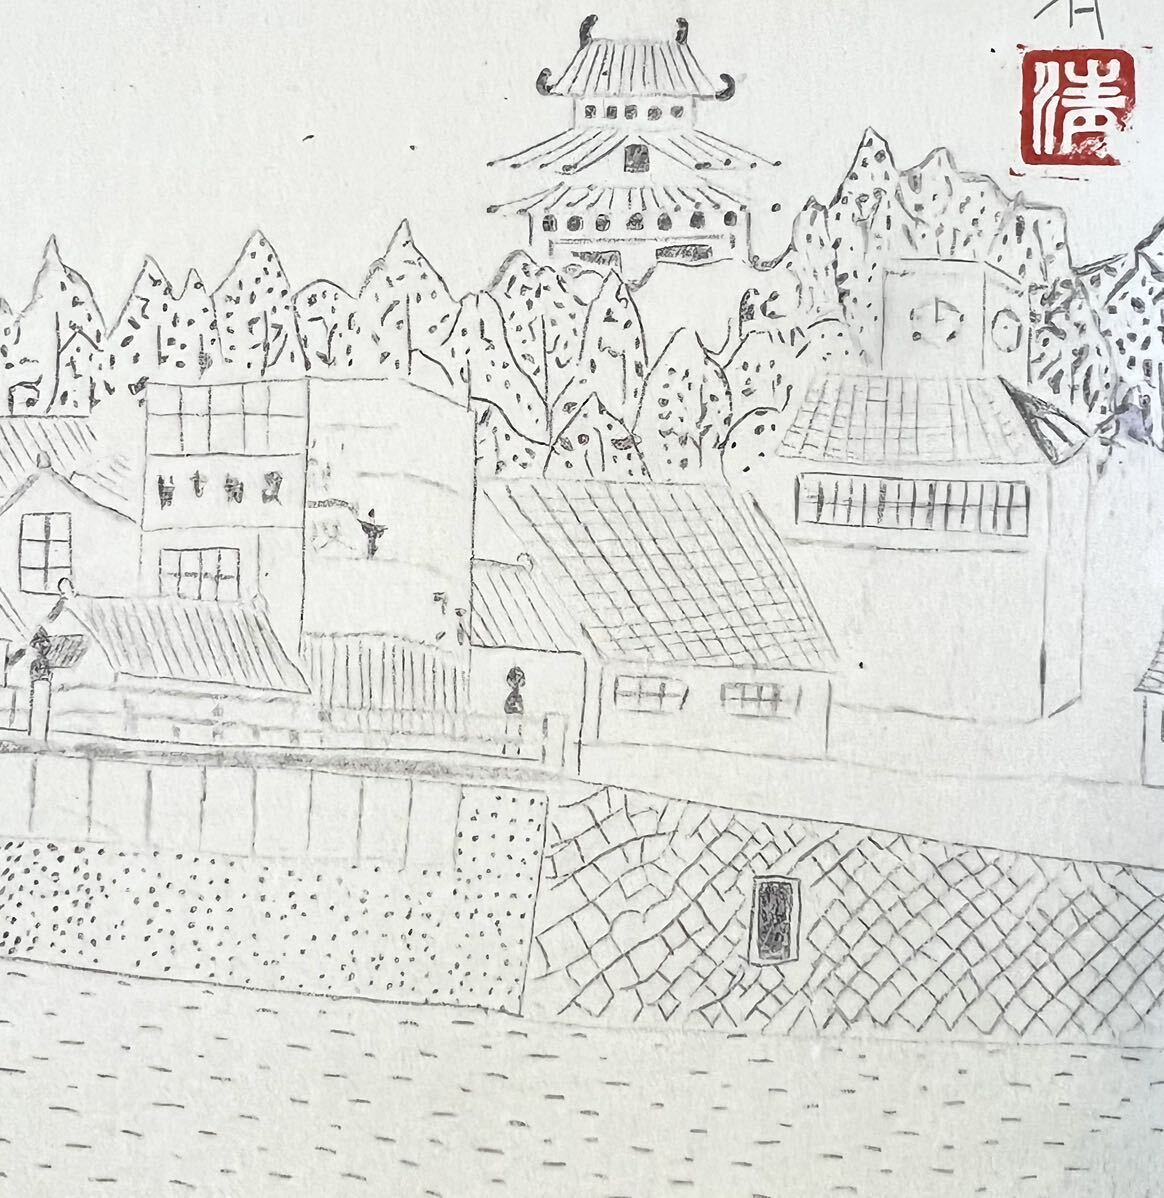 [ факсимиле ] гора внизу Kiyoshi [ Matsue замок ] карточка для автографов, стихов, пожеланий рамка бумага книга@ пейзаж карандашный набросок автограф иметь .. иметь человек . писал было использовано gk031504